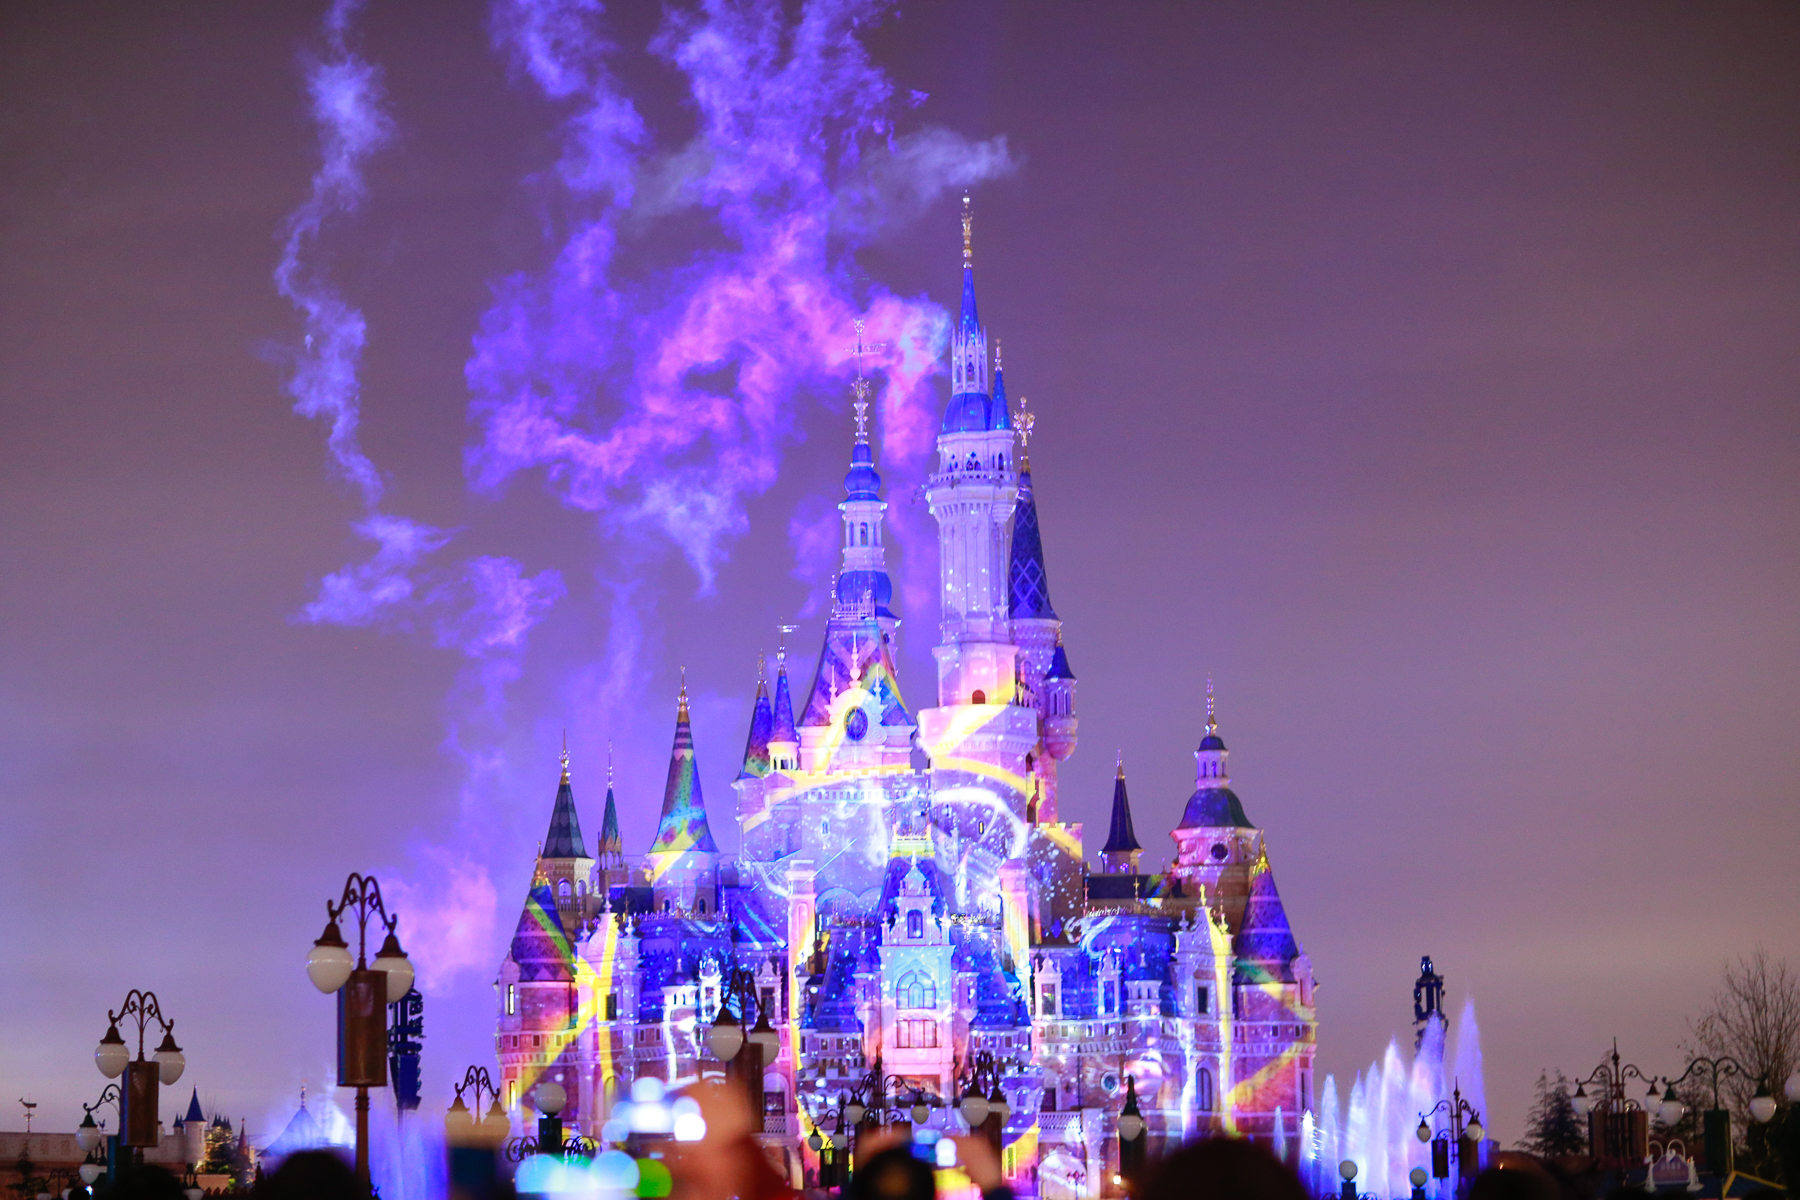 迪士尼城堡微信背景图-迪士尼城堡背景图夜晚-迪士尼烟花背景图高清 - 见闻坊